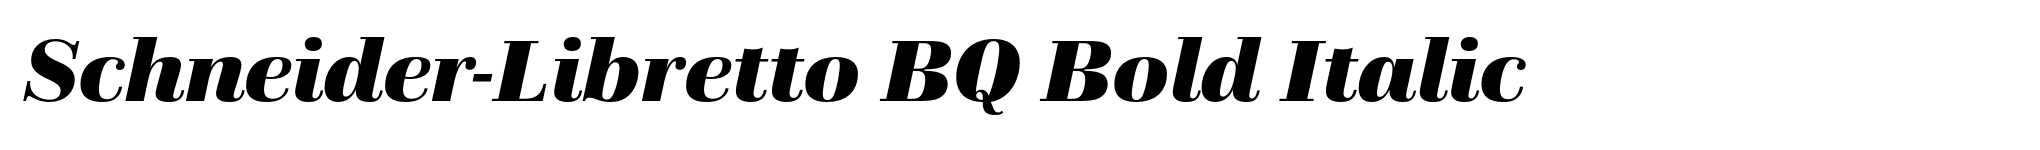 Schneider-Libretto BQ Bold Italic image